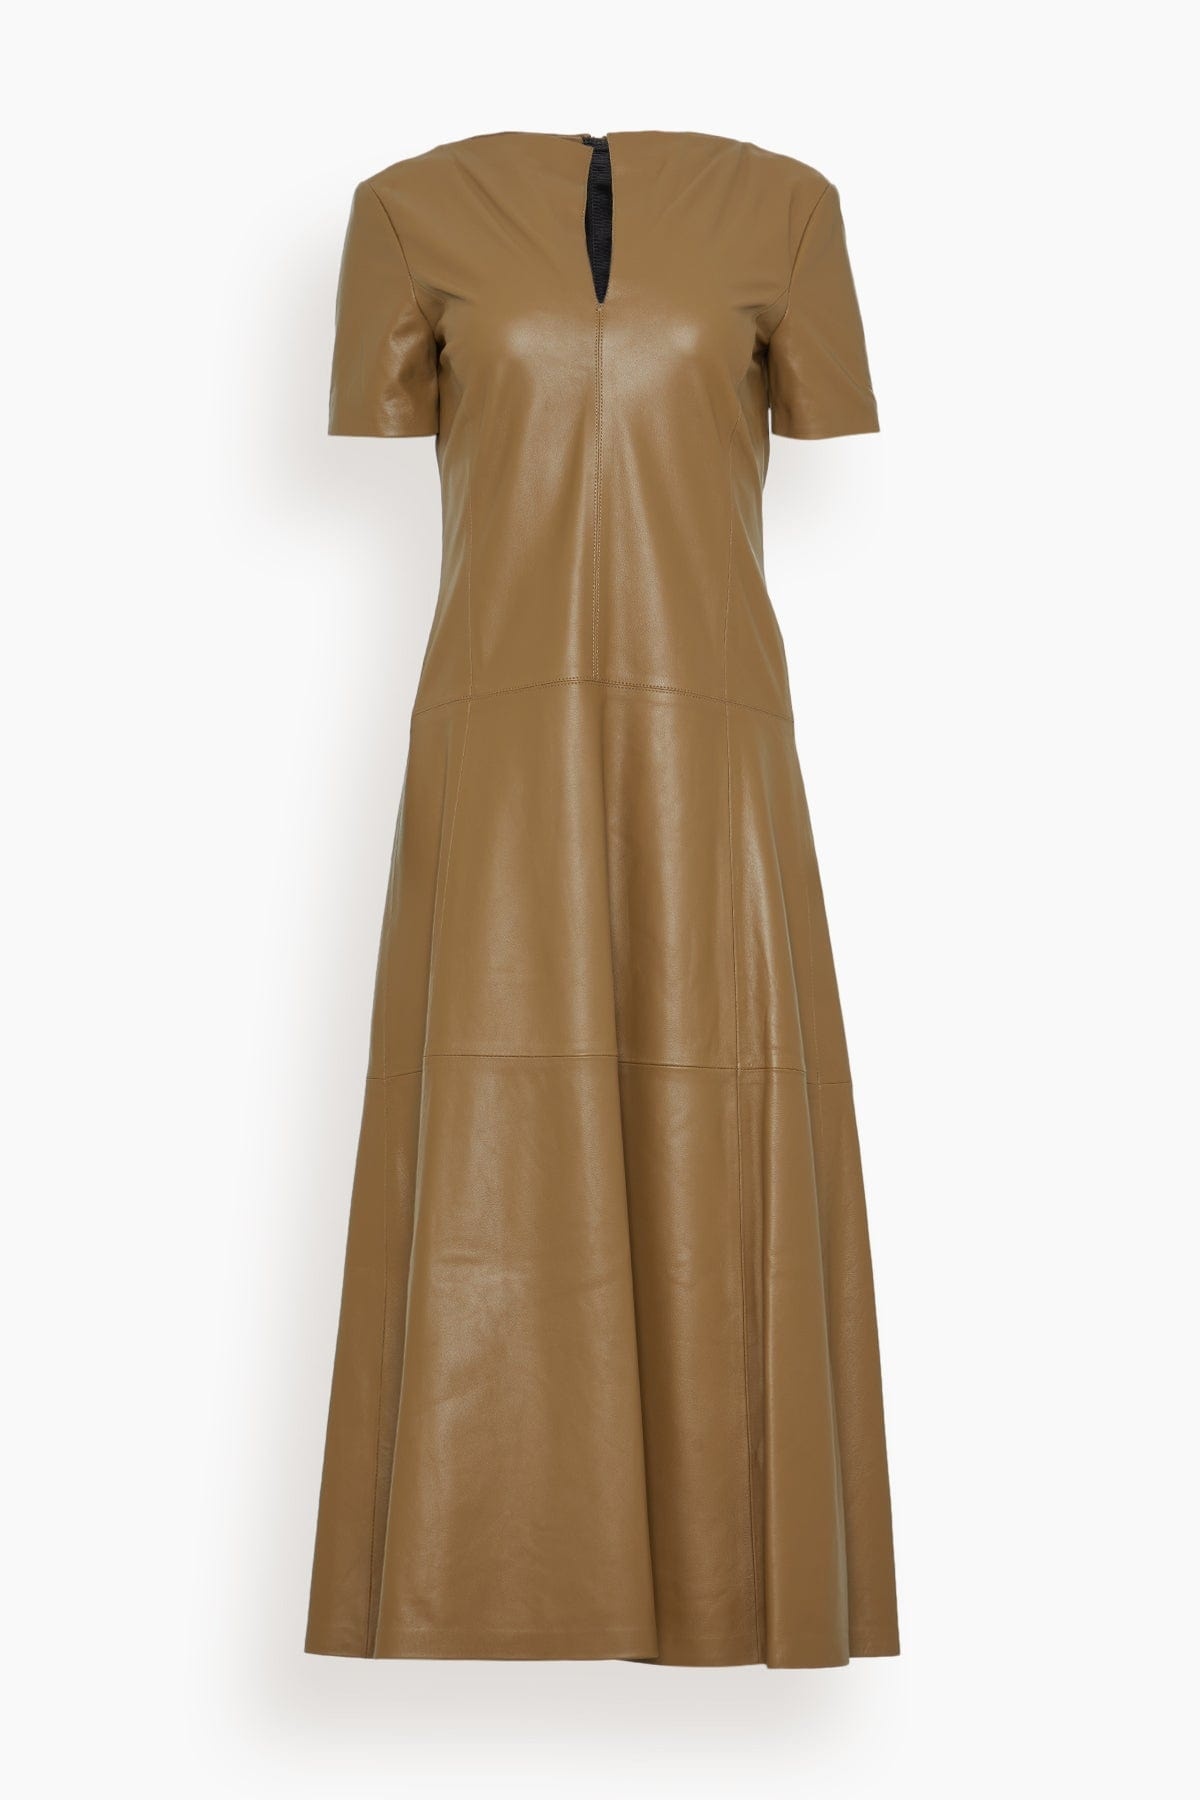 Sleek Statement Dress in Medium Olive - 1